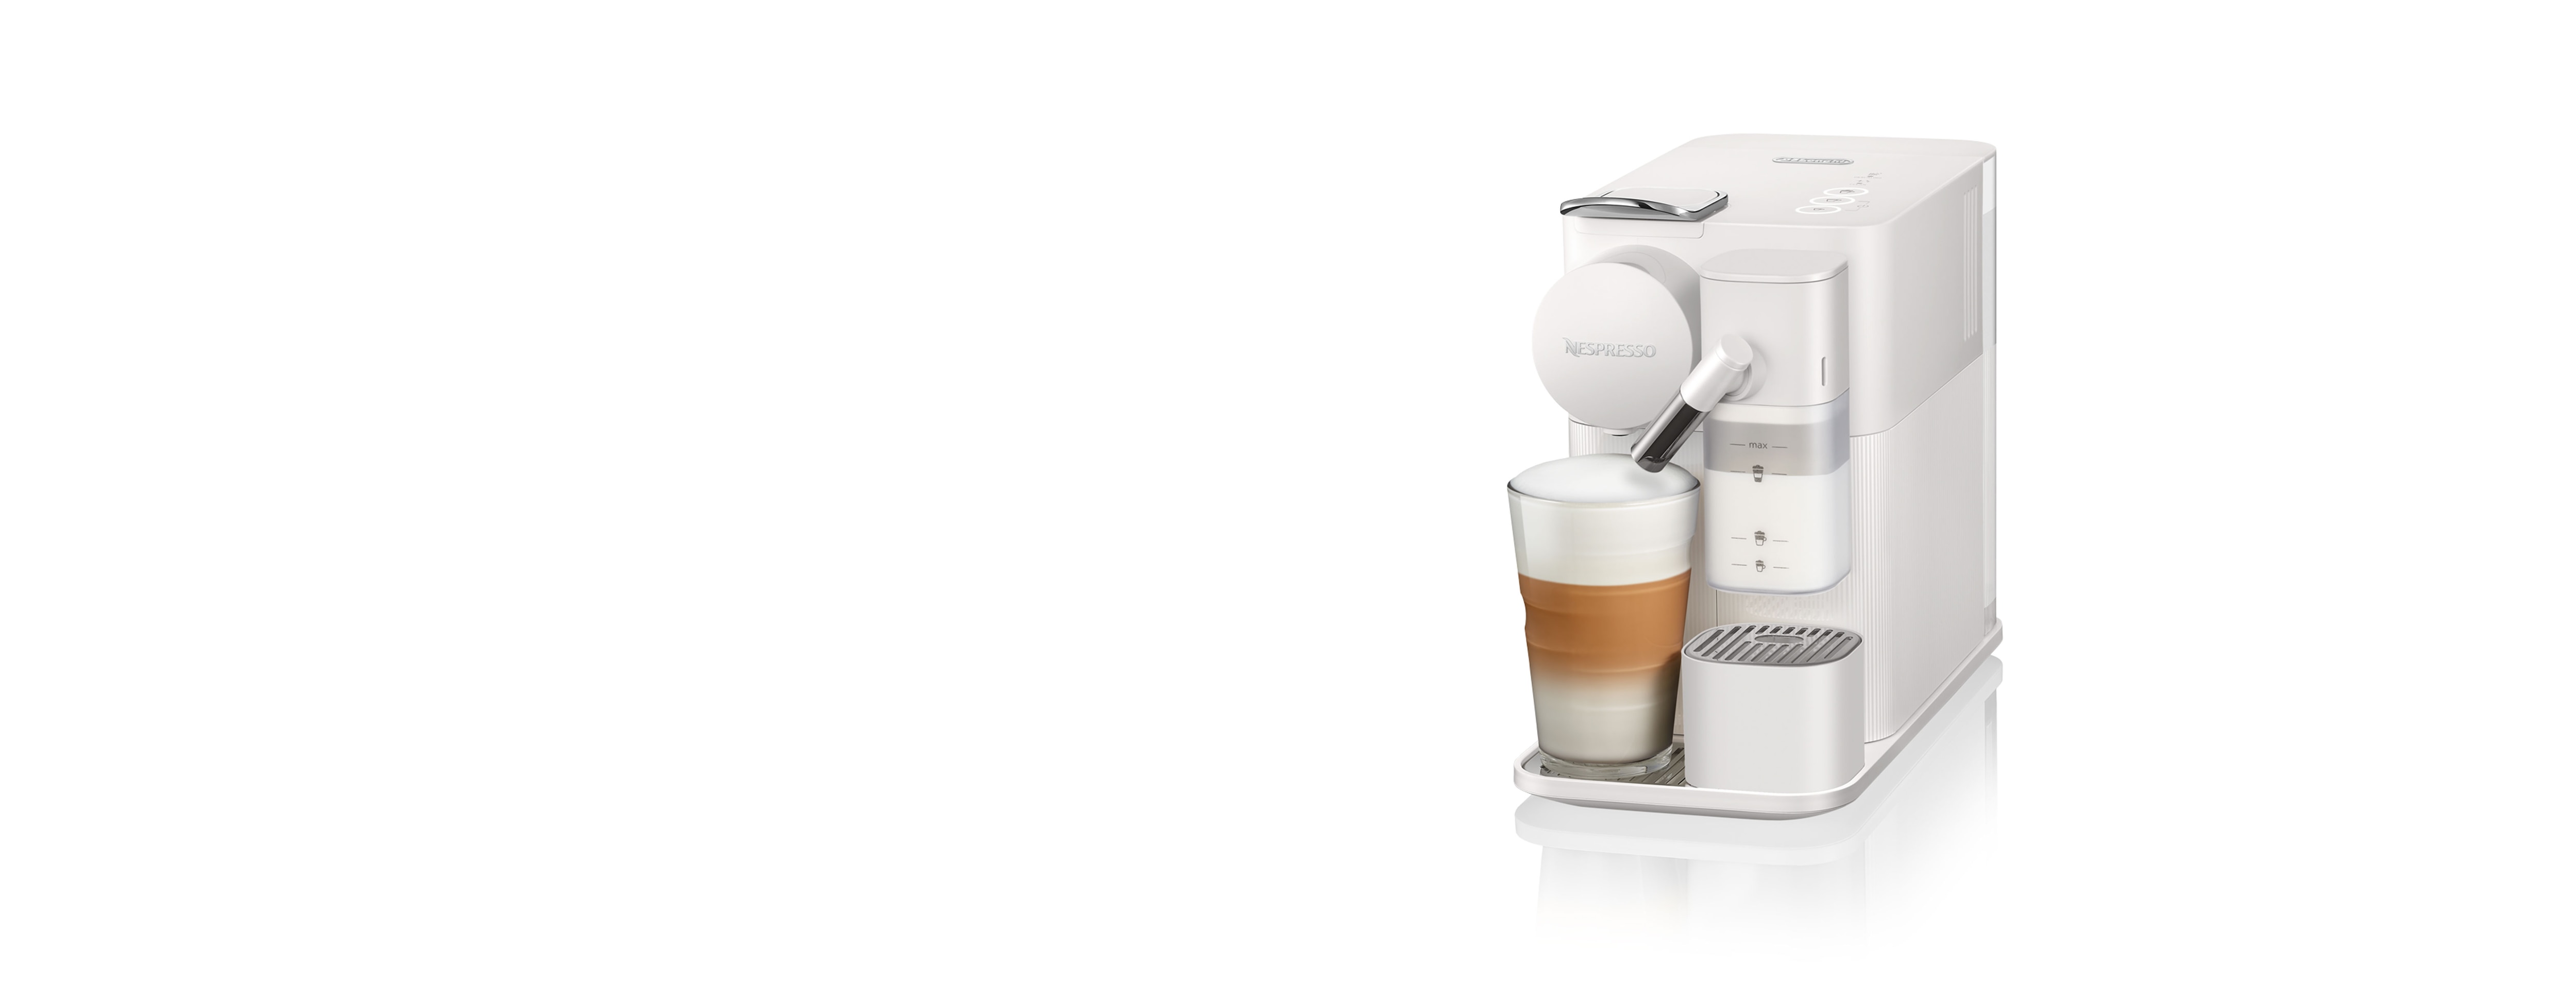 DL-pro Lot de 2 tubes d'aspiration de lait 101 mm pour machine à café DeLonghi 5313226701 EN520 Nespresso Lattissima avec brosse 